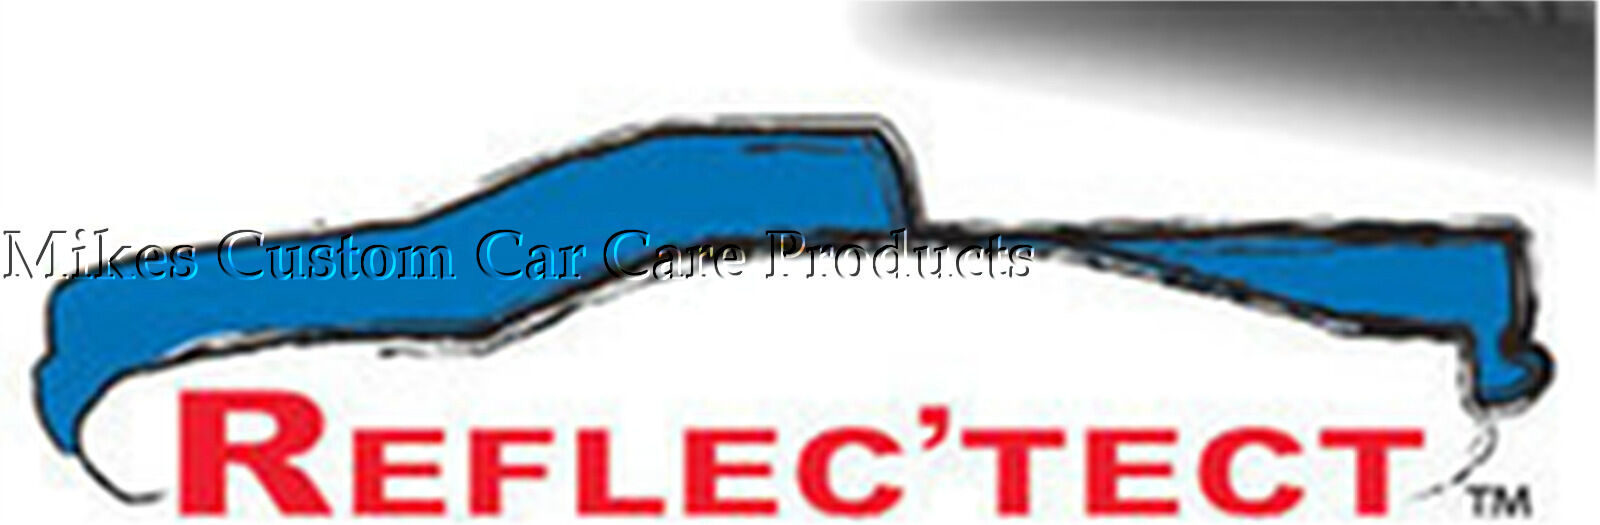 Covercraft REFLEC'TECT Car Cover Custom Made for 1993-1997 Chevrolet Camaro Z-28